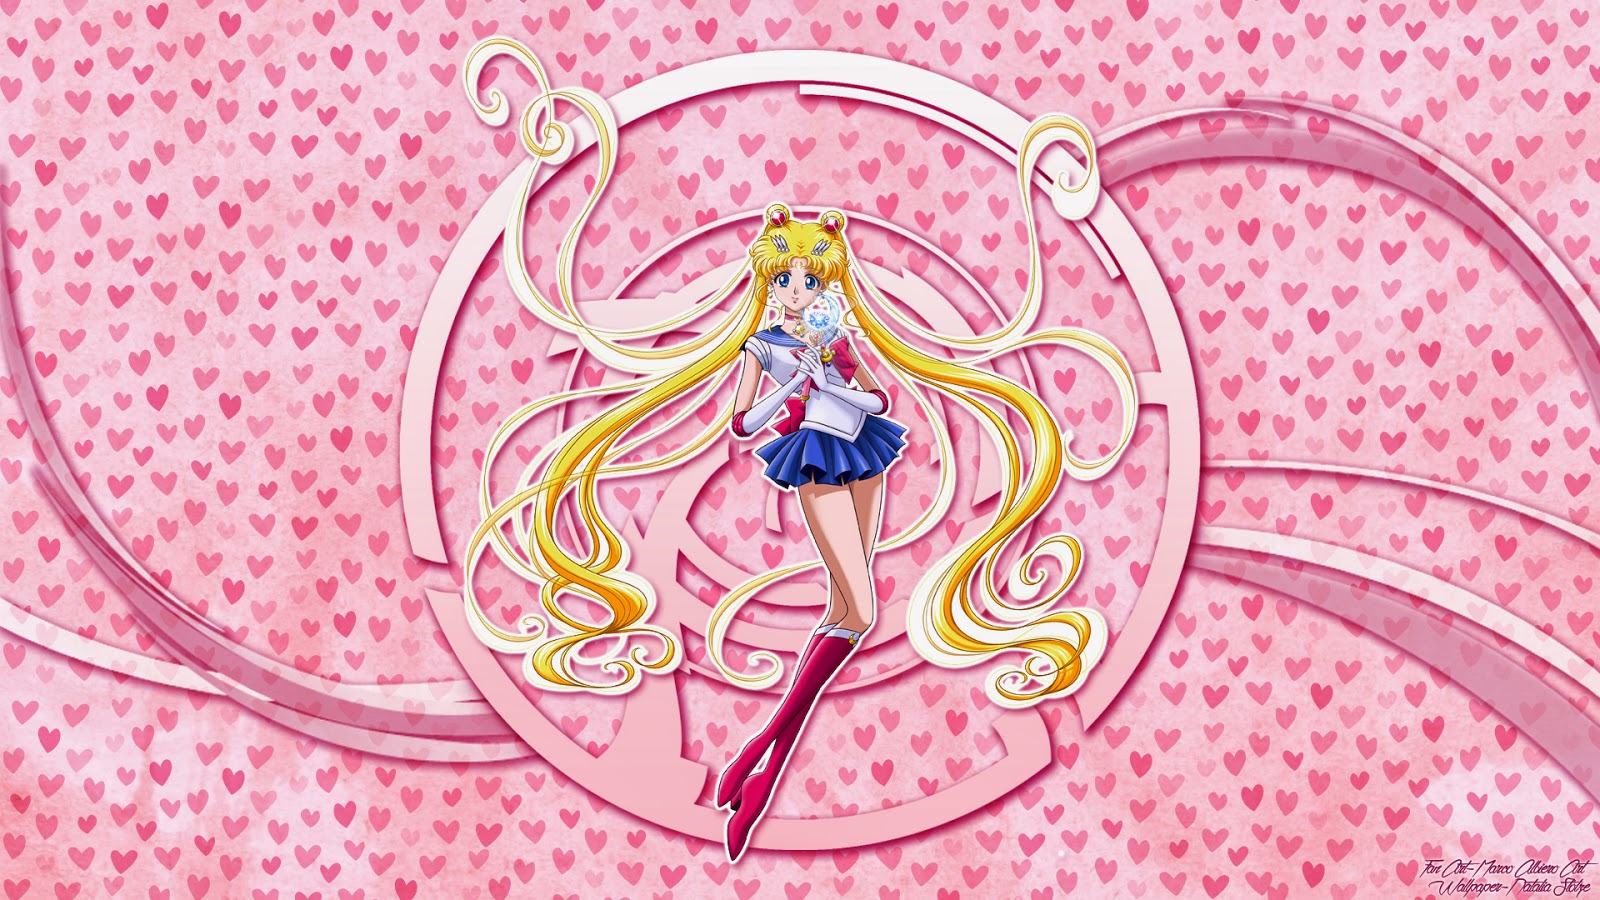 Màn hình nền Sailor Moon Crystal không thể vỡ - đó là cách hoàn hảo để biến chiếc điện thoại hoặc máy tính của bạn thành một thiên đường cho người hâm mộ Sailor Moon. Với thiết kế độc đáo và phong cách, màn hình nền này sẽ đem lại sự thỏa mãn tuyệt vời cho mọi fan hâm mộ Sailor Moon. 